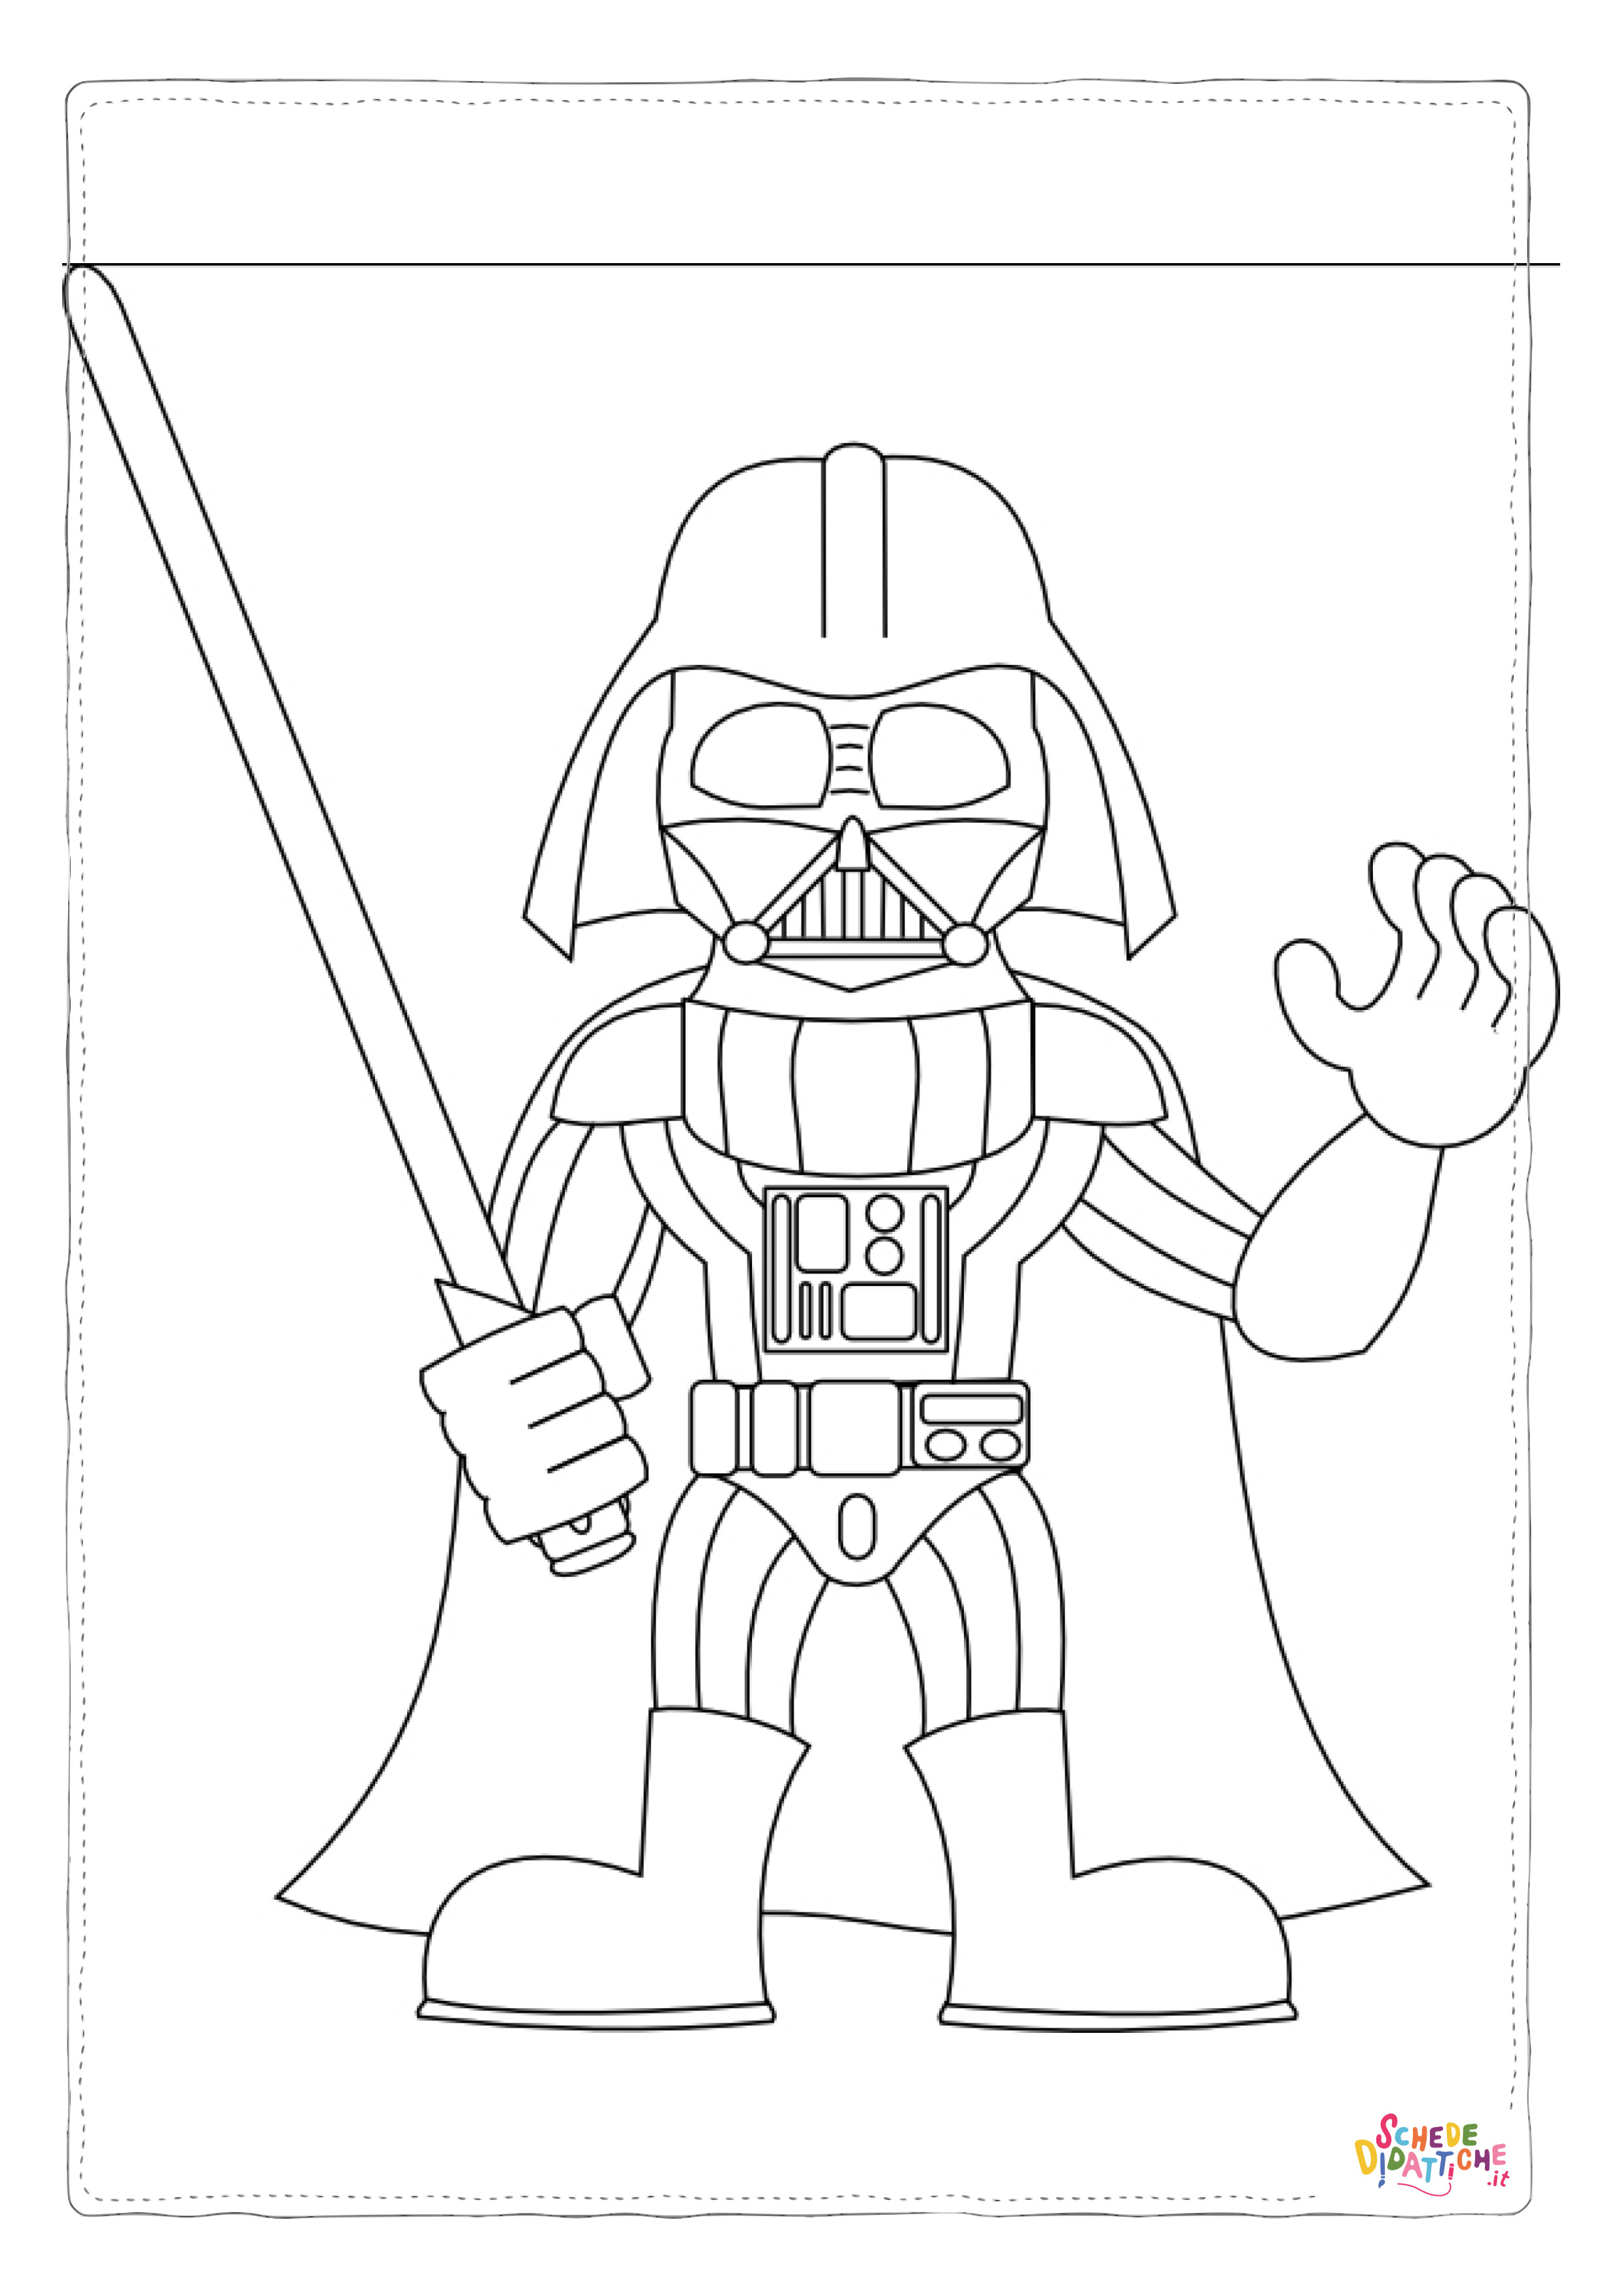 Disegno di LEGO Star Wars da stampare e colorare 11